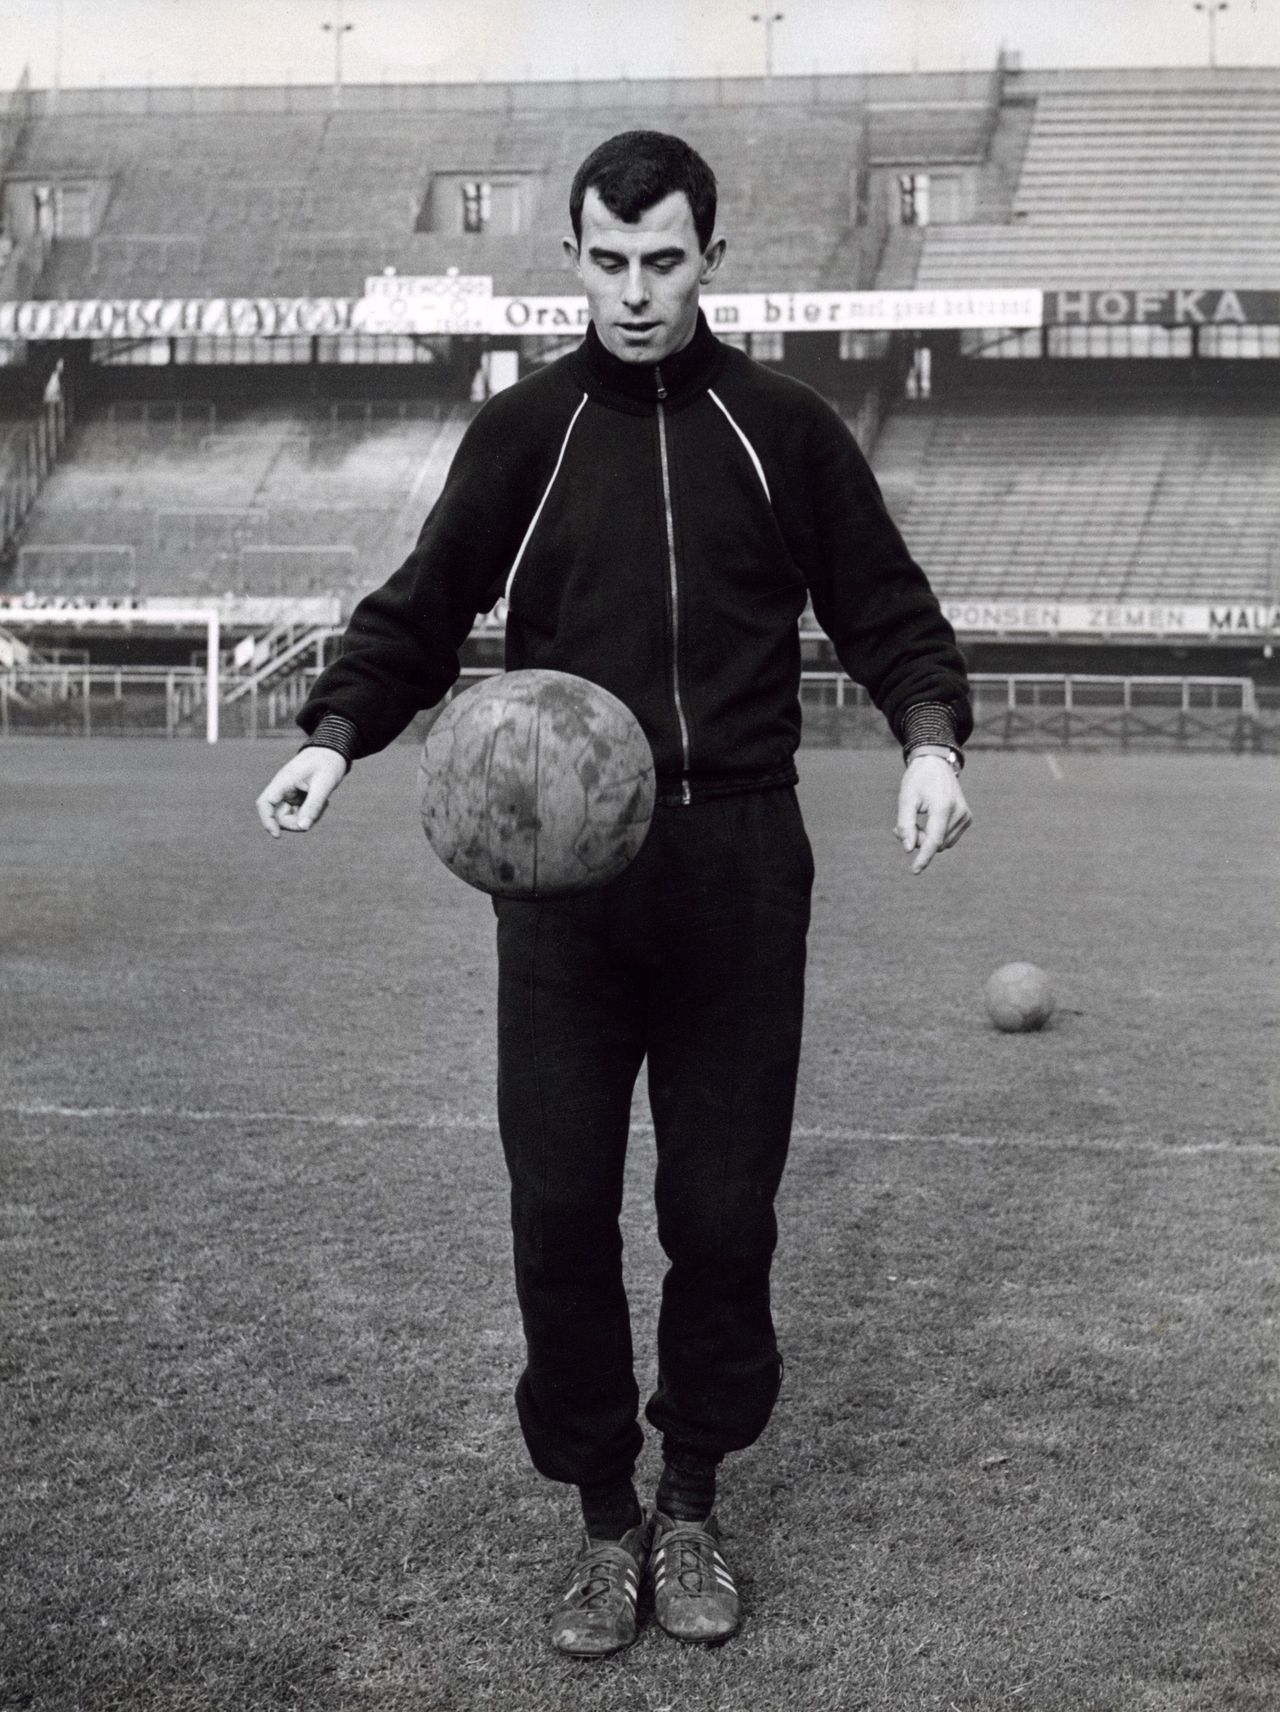 Coen Moulijn voetballer van Feyenoord en het Nederlands elftal, houdt een balletje hoog in een lege Kuip, Rotterdam, Nederland 1960.